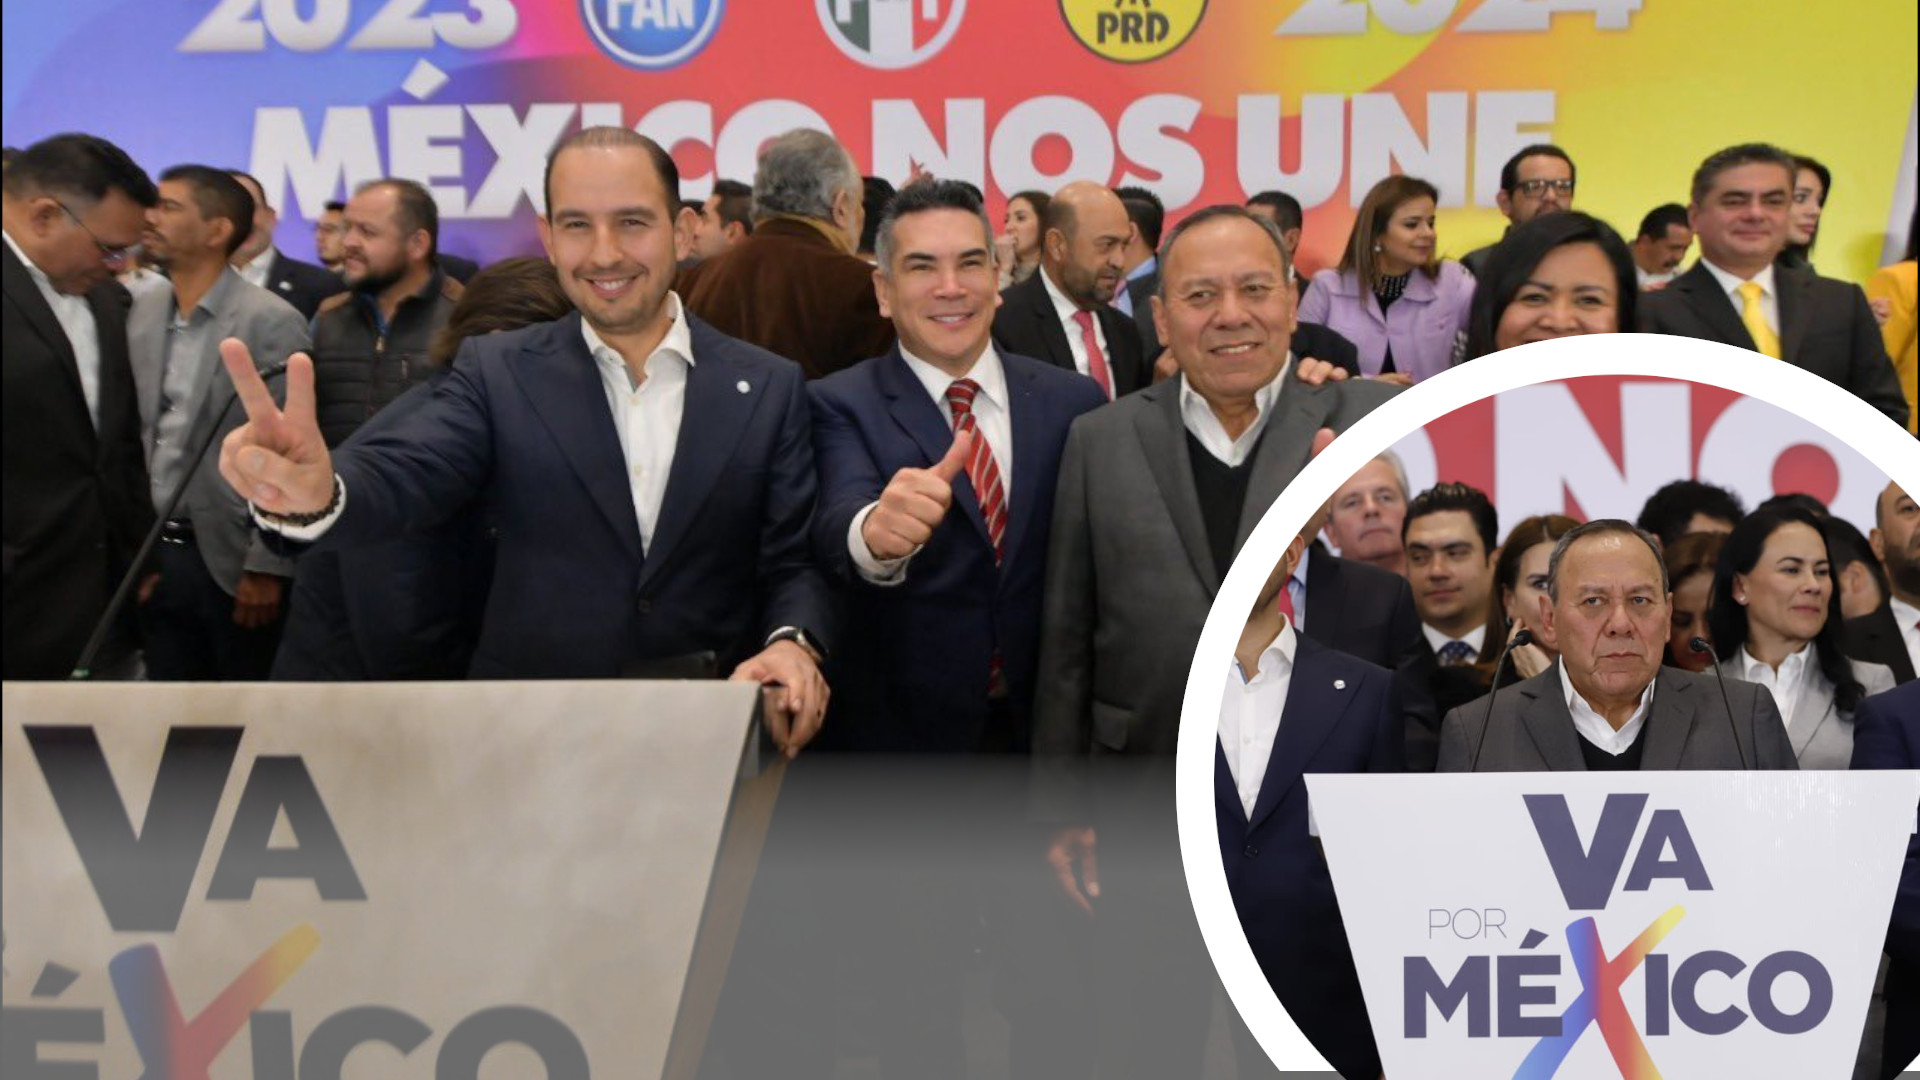 ‘Va por México’ renace, alianza PRI, PAN y PRD buscan ganar elecciones contra Morena